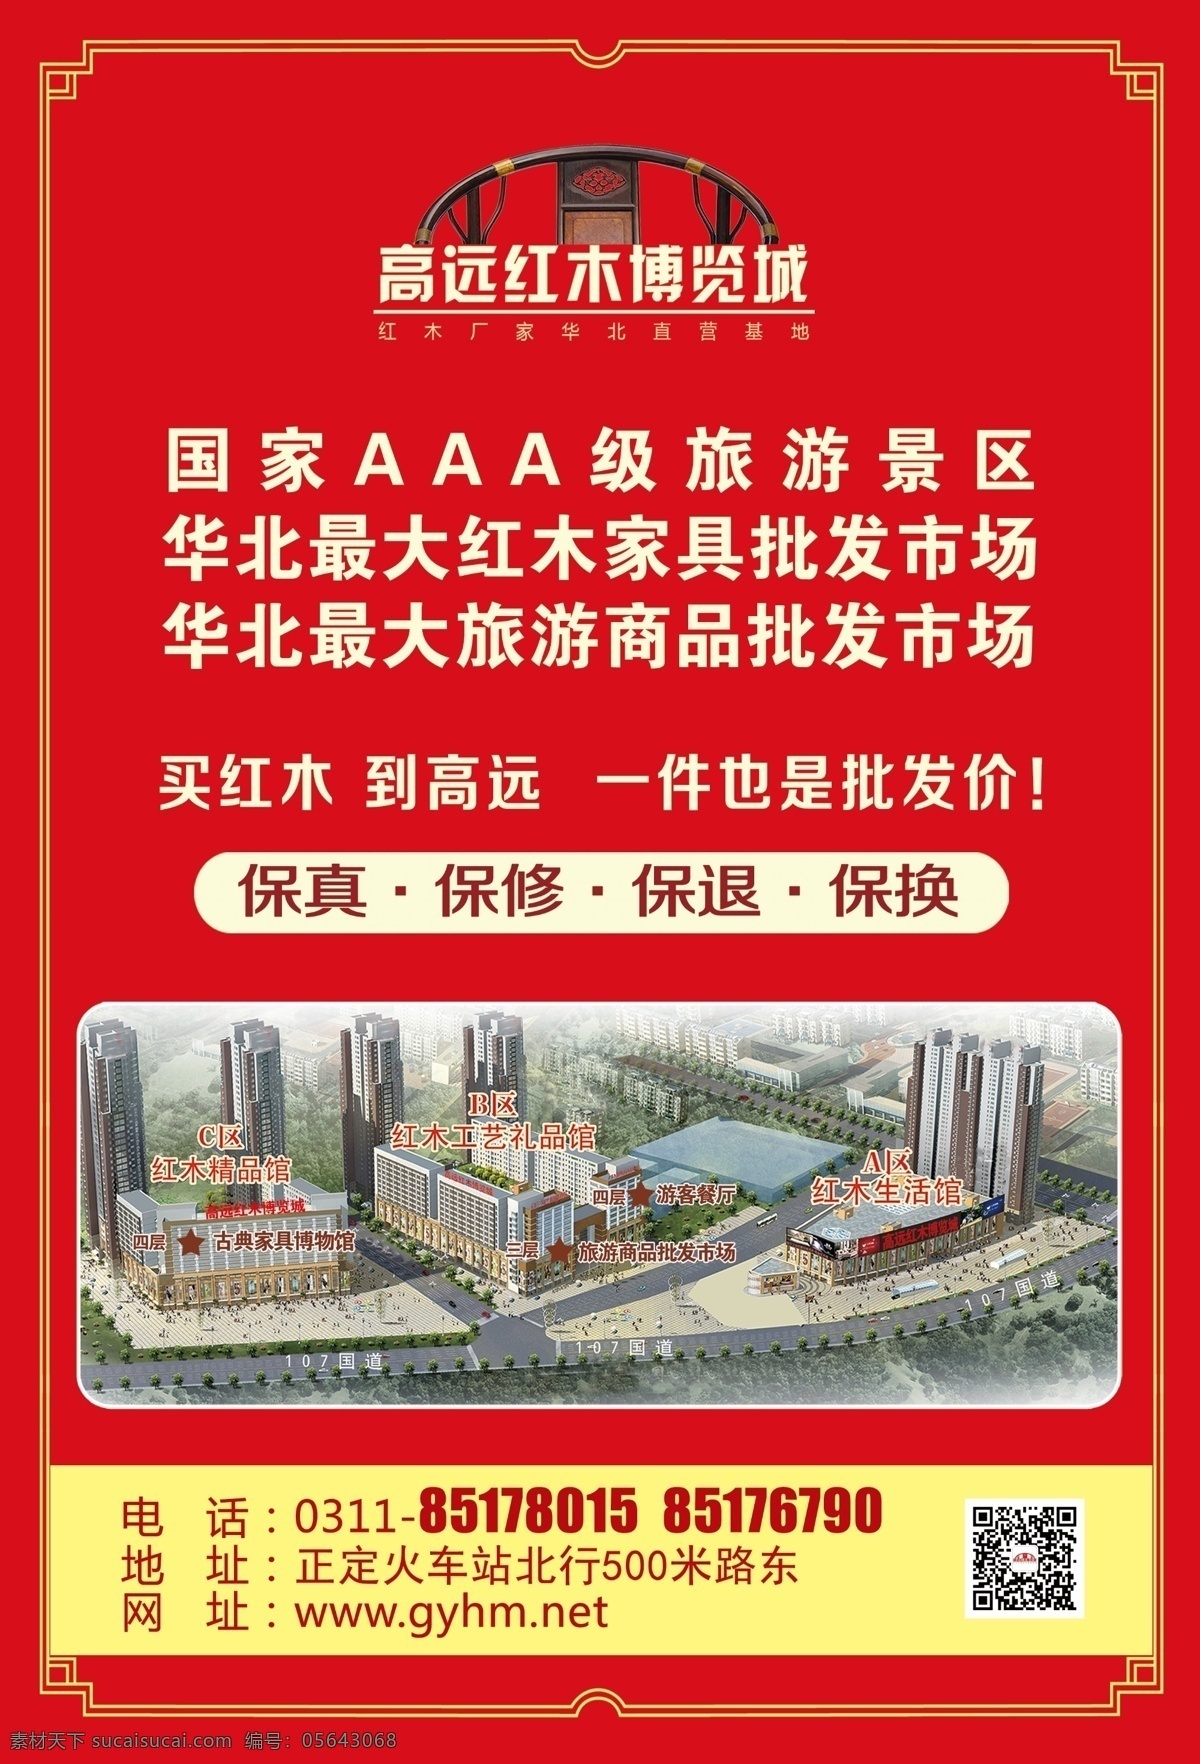 红木 单 页 dm宣传单 底纹 红色 节日 gaoyuan 海报 宣传海报 宣传单 彩页 dm